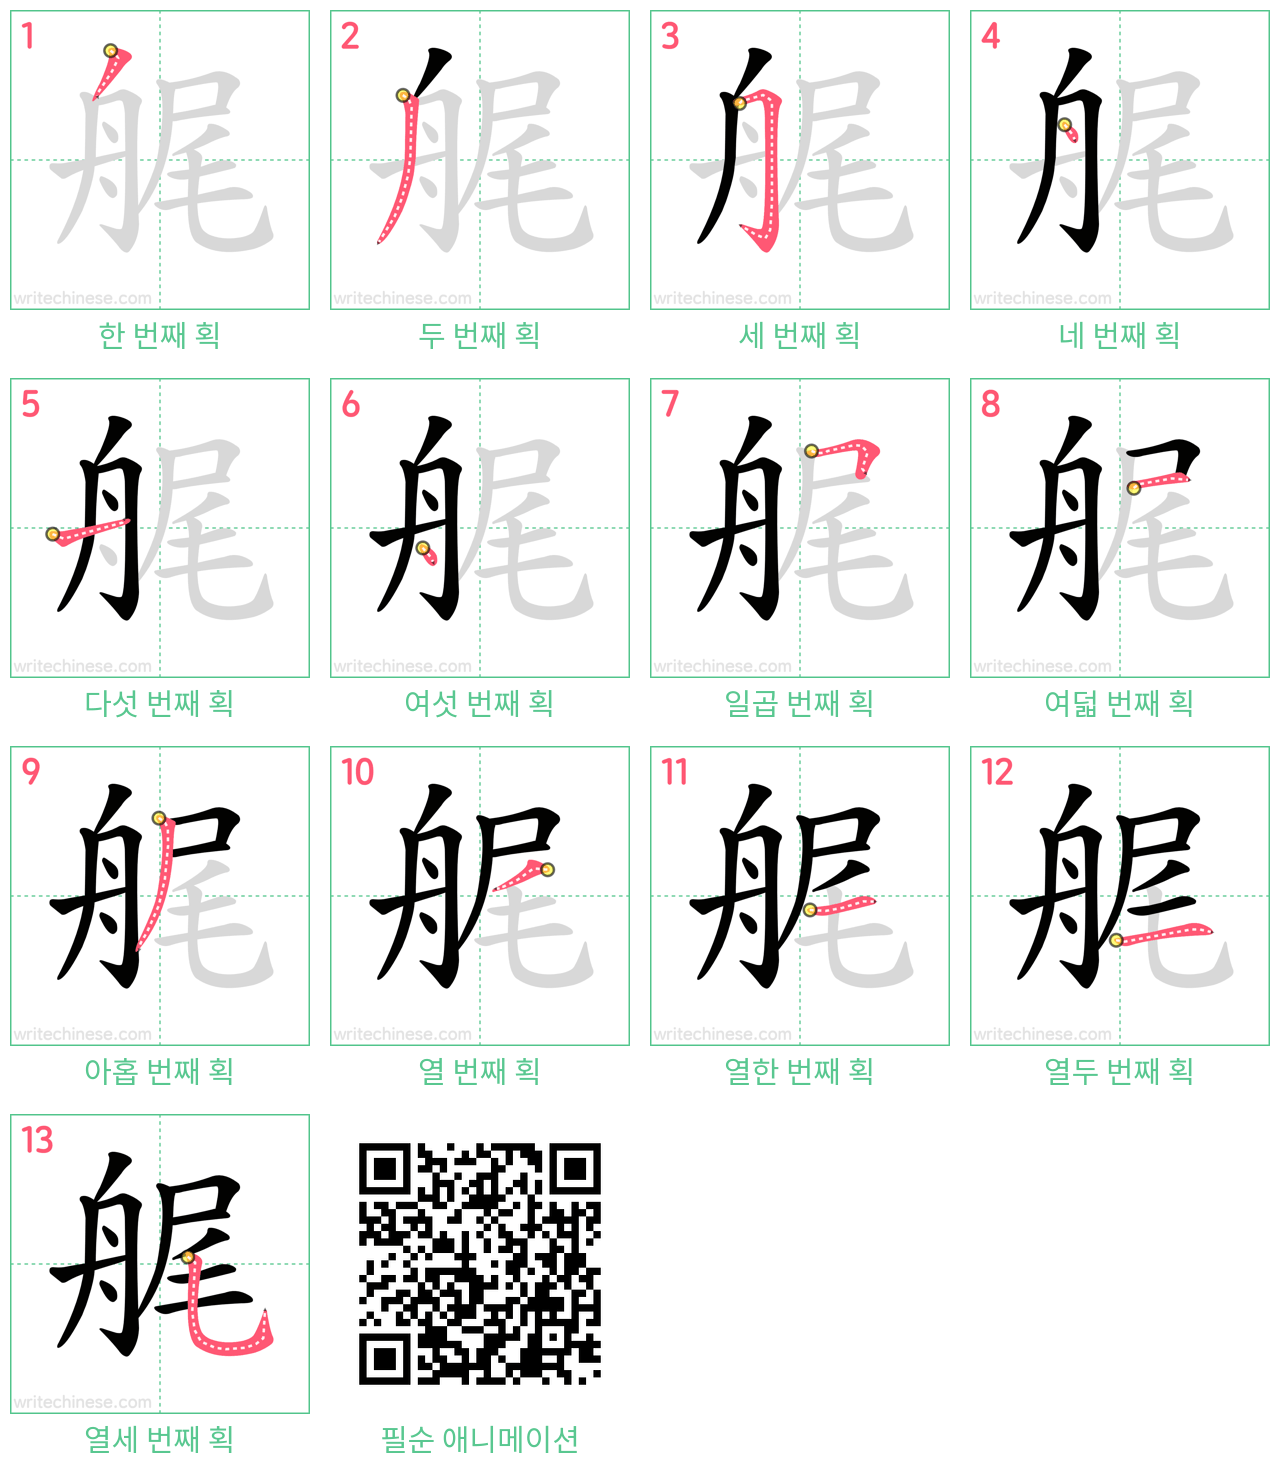 艉 step-by-step stroke order diagrams